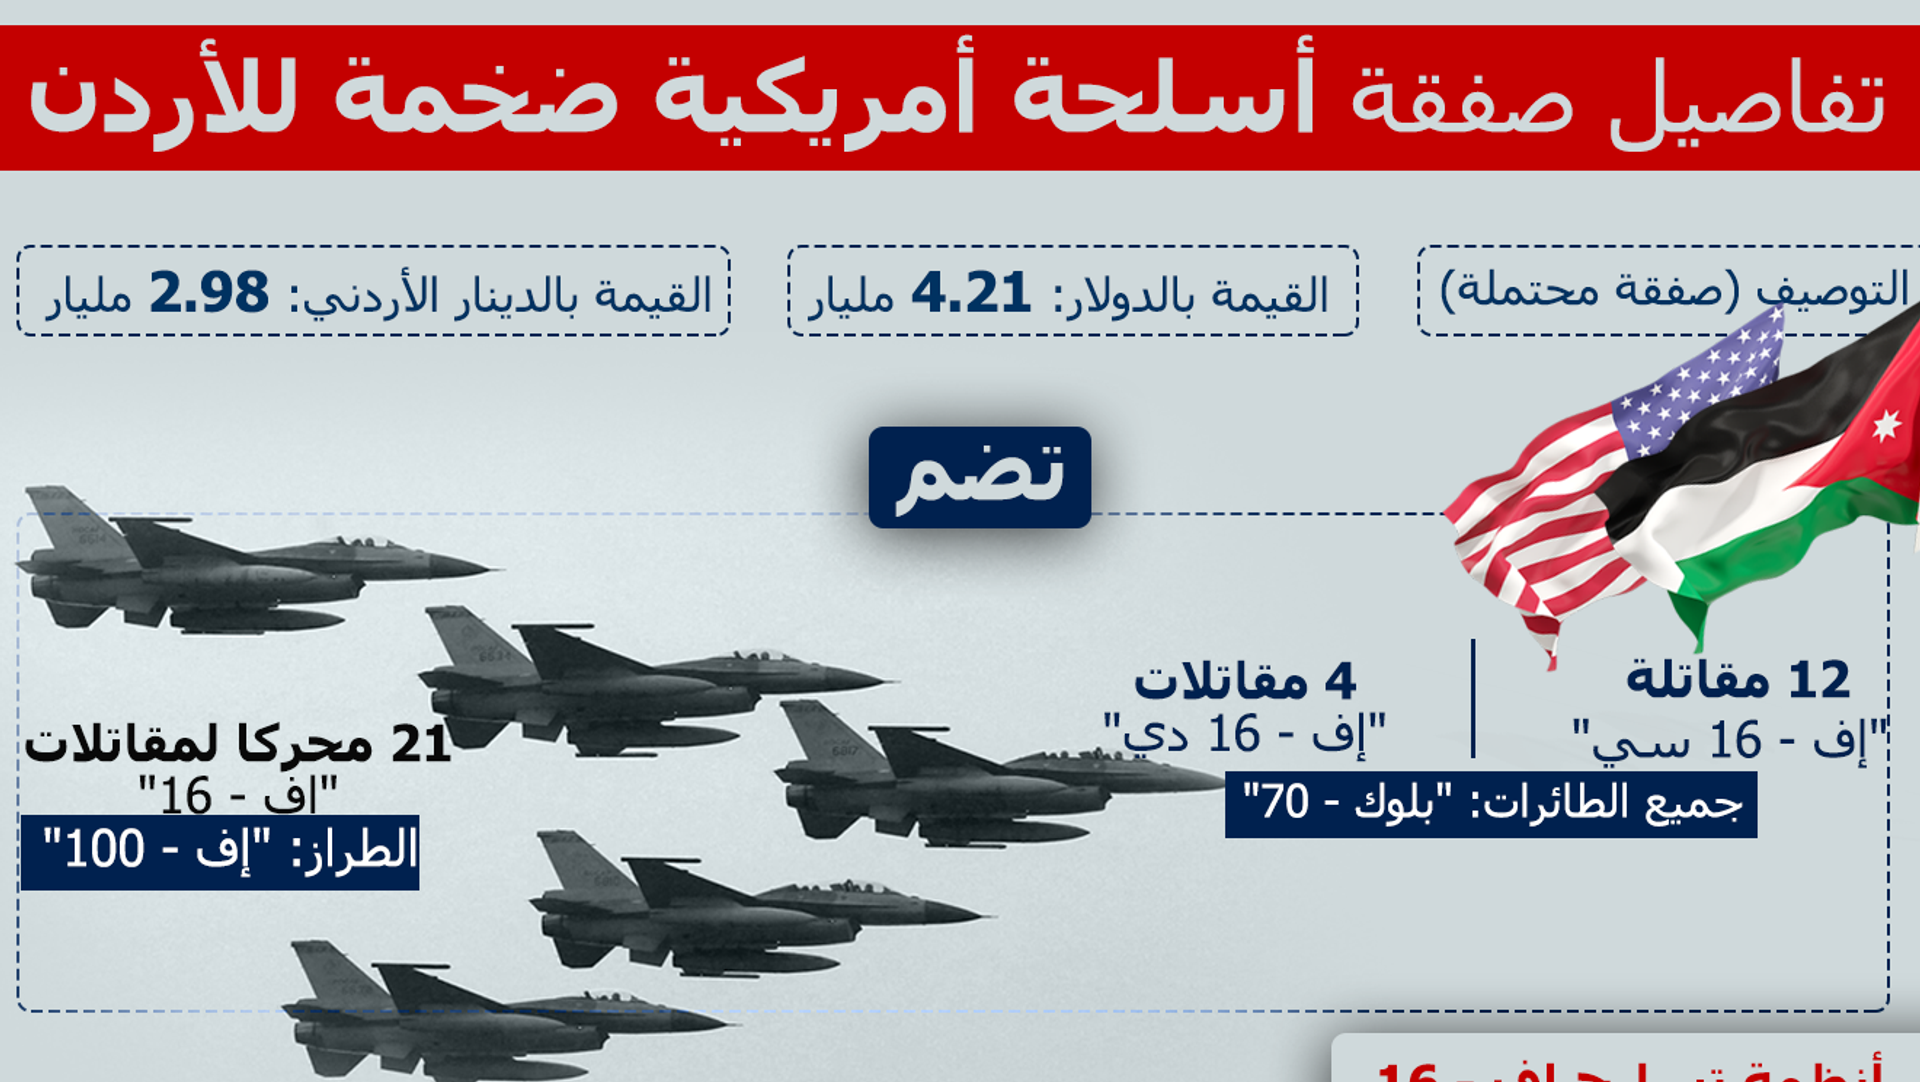 أمريكا توافق على بيع 8 مقاتلات "إف - 16" إلى الأردن - 19.06.2022, سبوتنيك  عربي